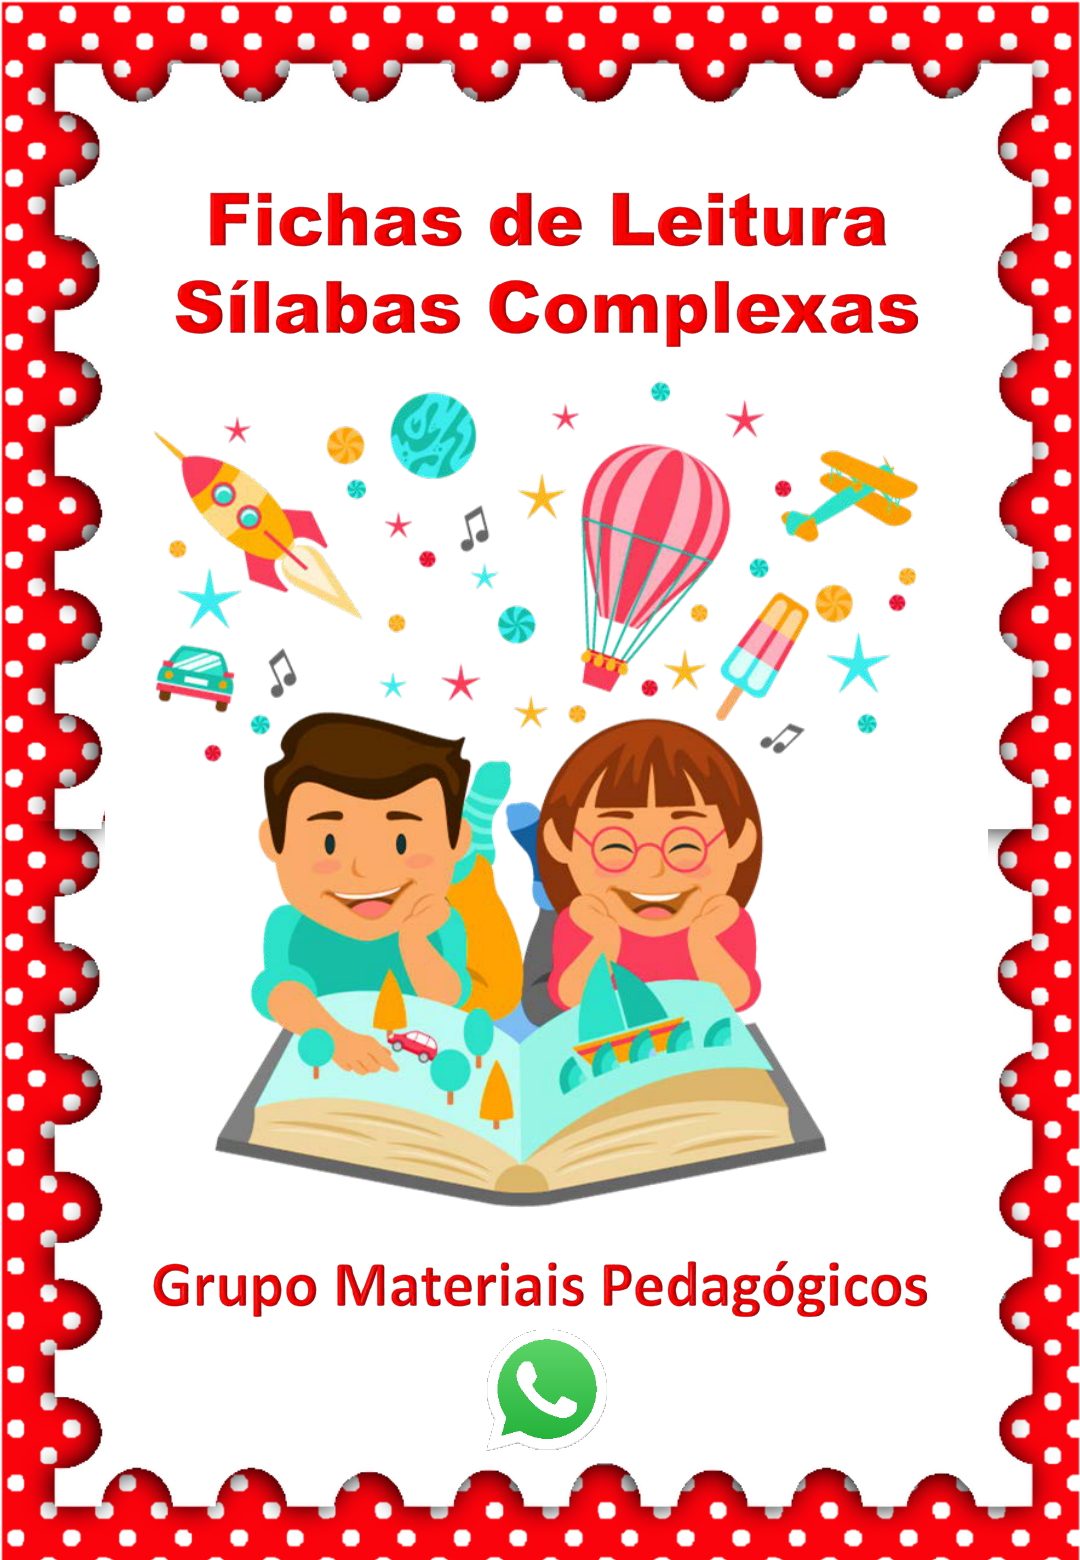 Fichas de Leitura com Sílabas Complexas - BRA - BRE - BRI - BRO - BRU. –  Educação e Transformação